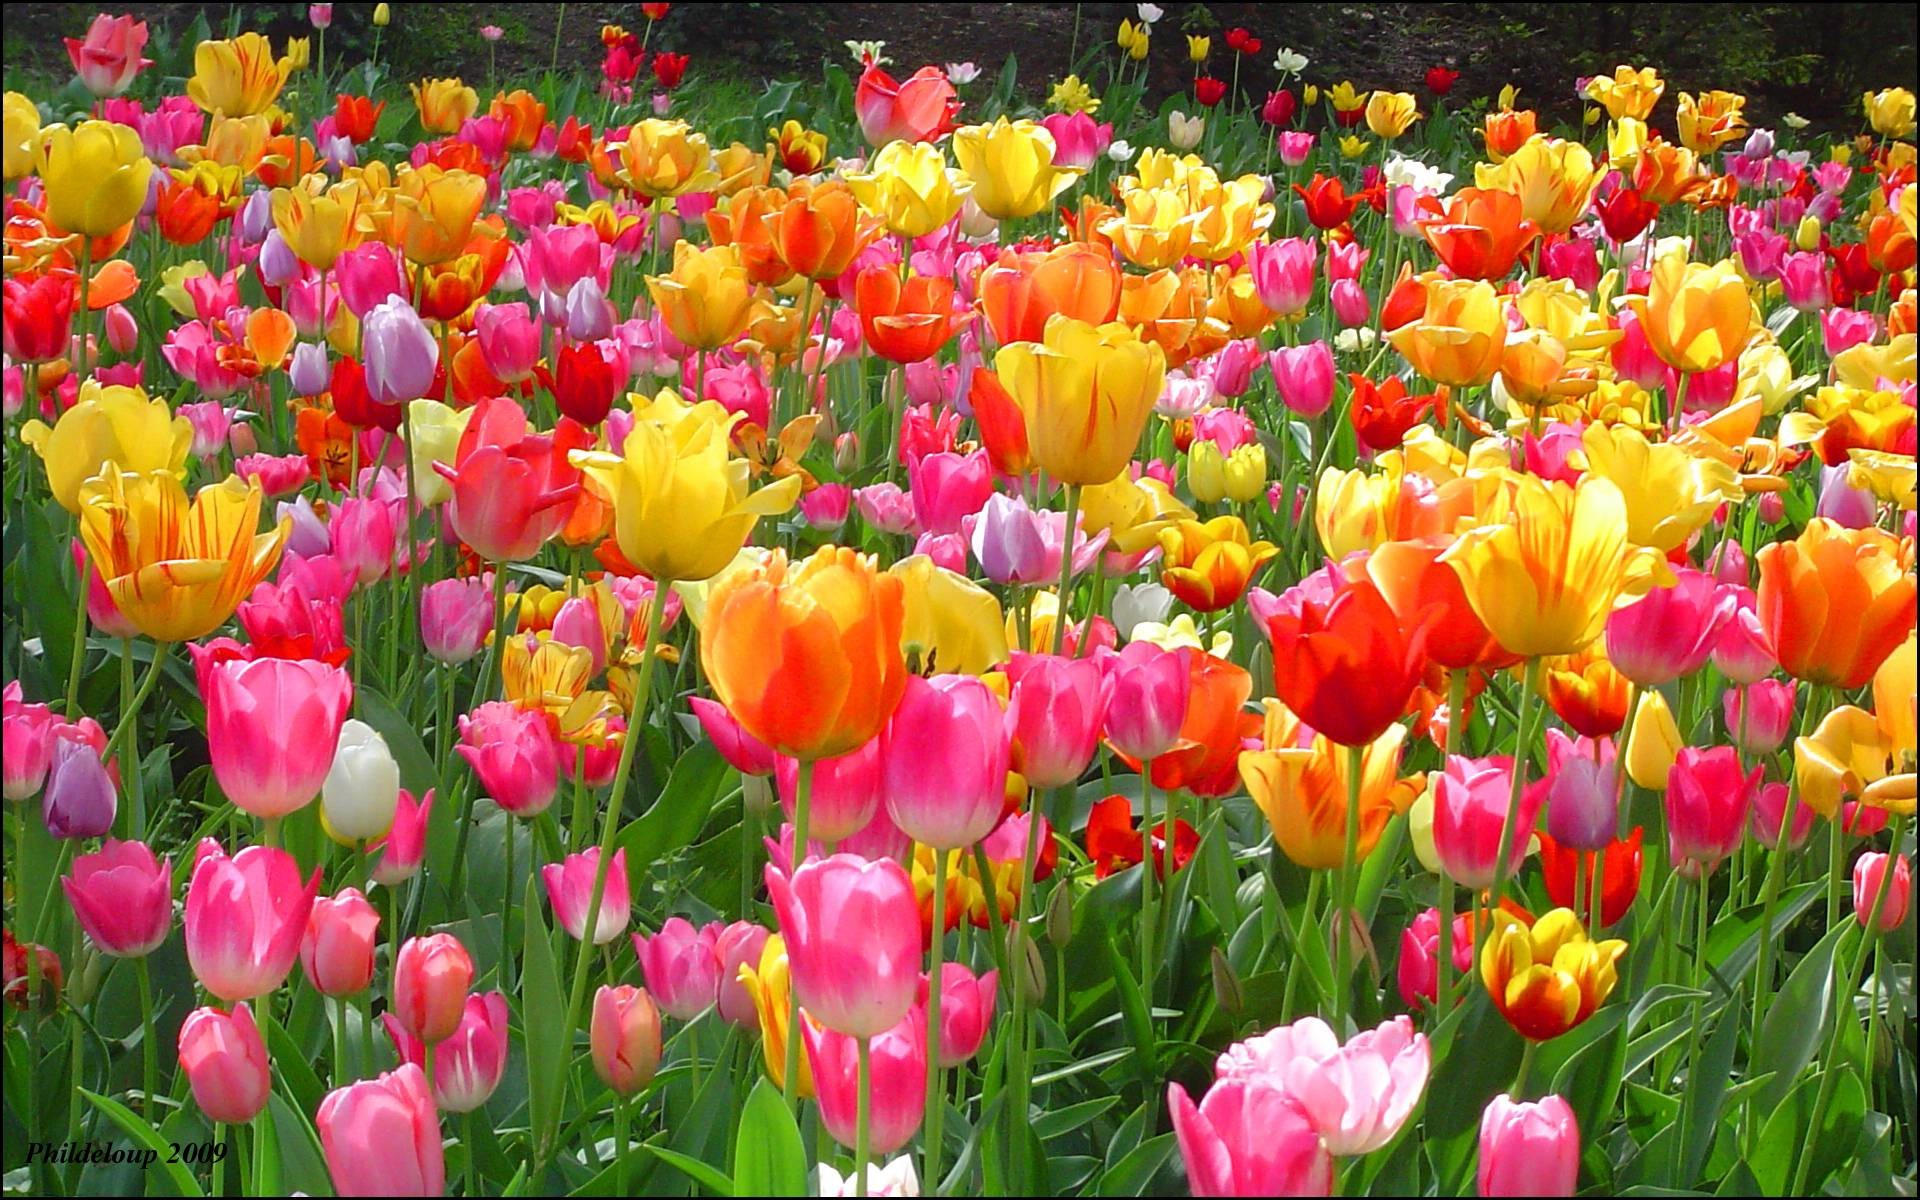 Hình Nền Hoa Tulip đẹp hinh nen hoa tulip dep được yêu thích nhất hiện nay